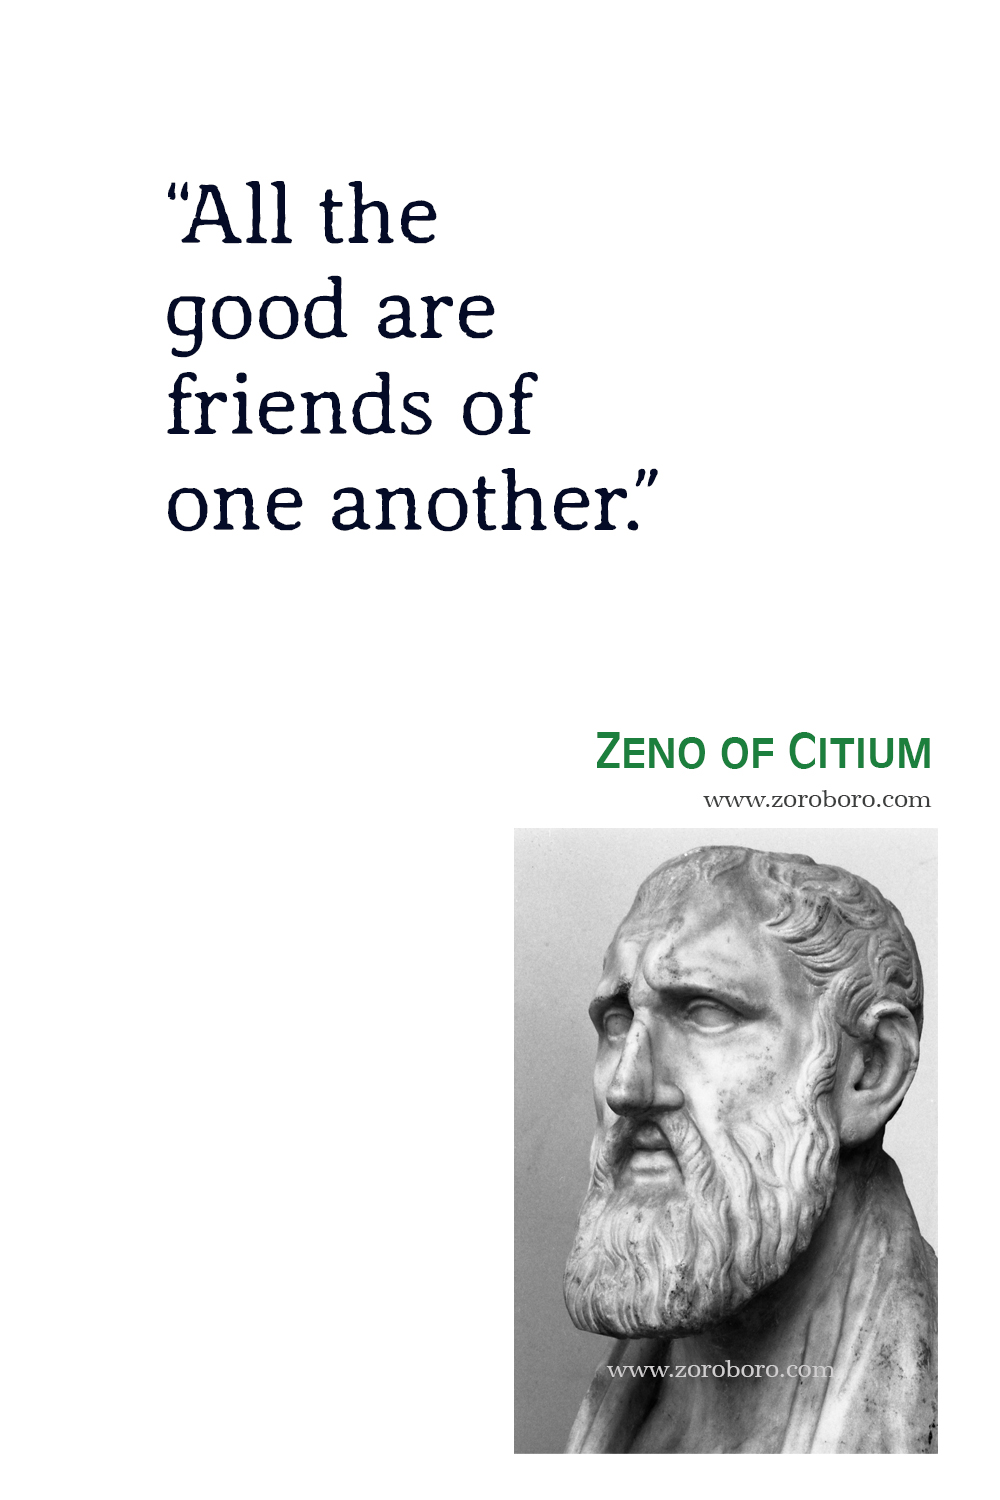 Zeno of Citium Quotes, Zeno of Citium Philosophy, Zeno of Citium Art, Zeno of Citium Wallpaper, Zeno of Citium Image, Zeno of Citium Quotes.